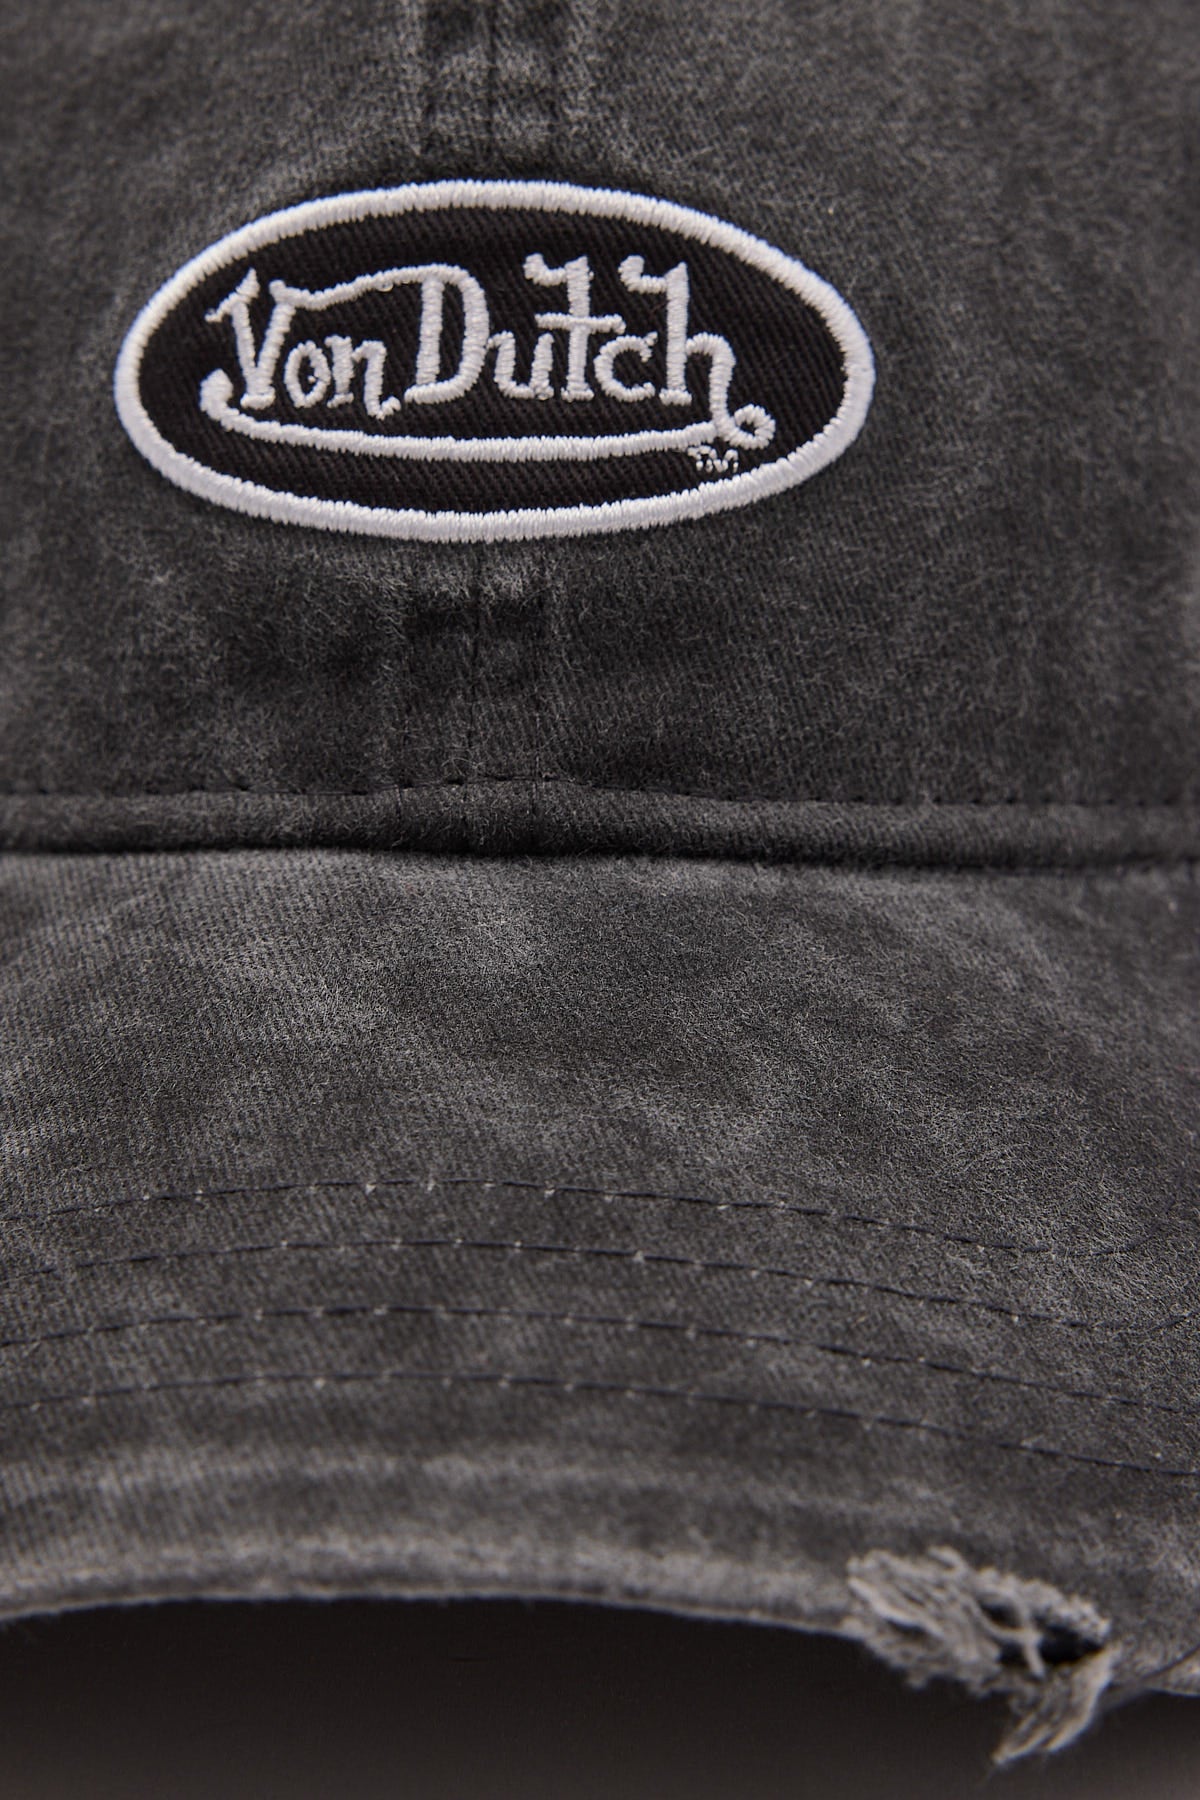 Von Dutch Washed Black Distressed Trucker Washed Black